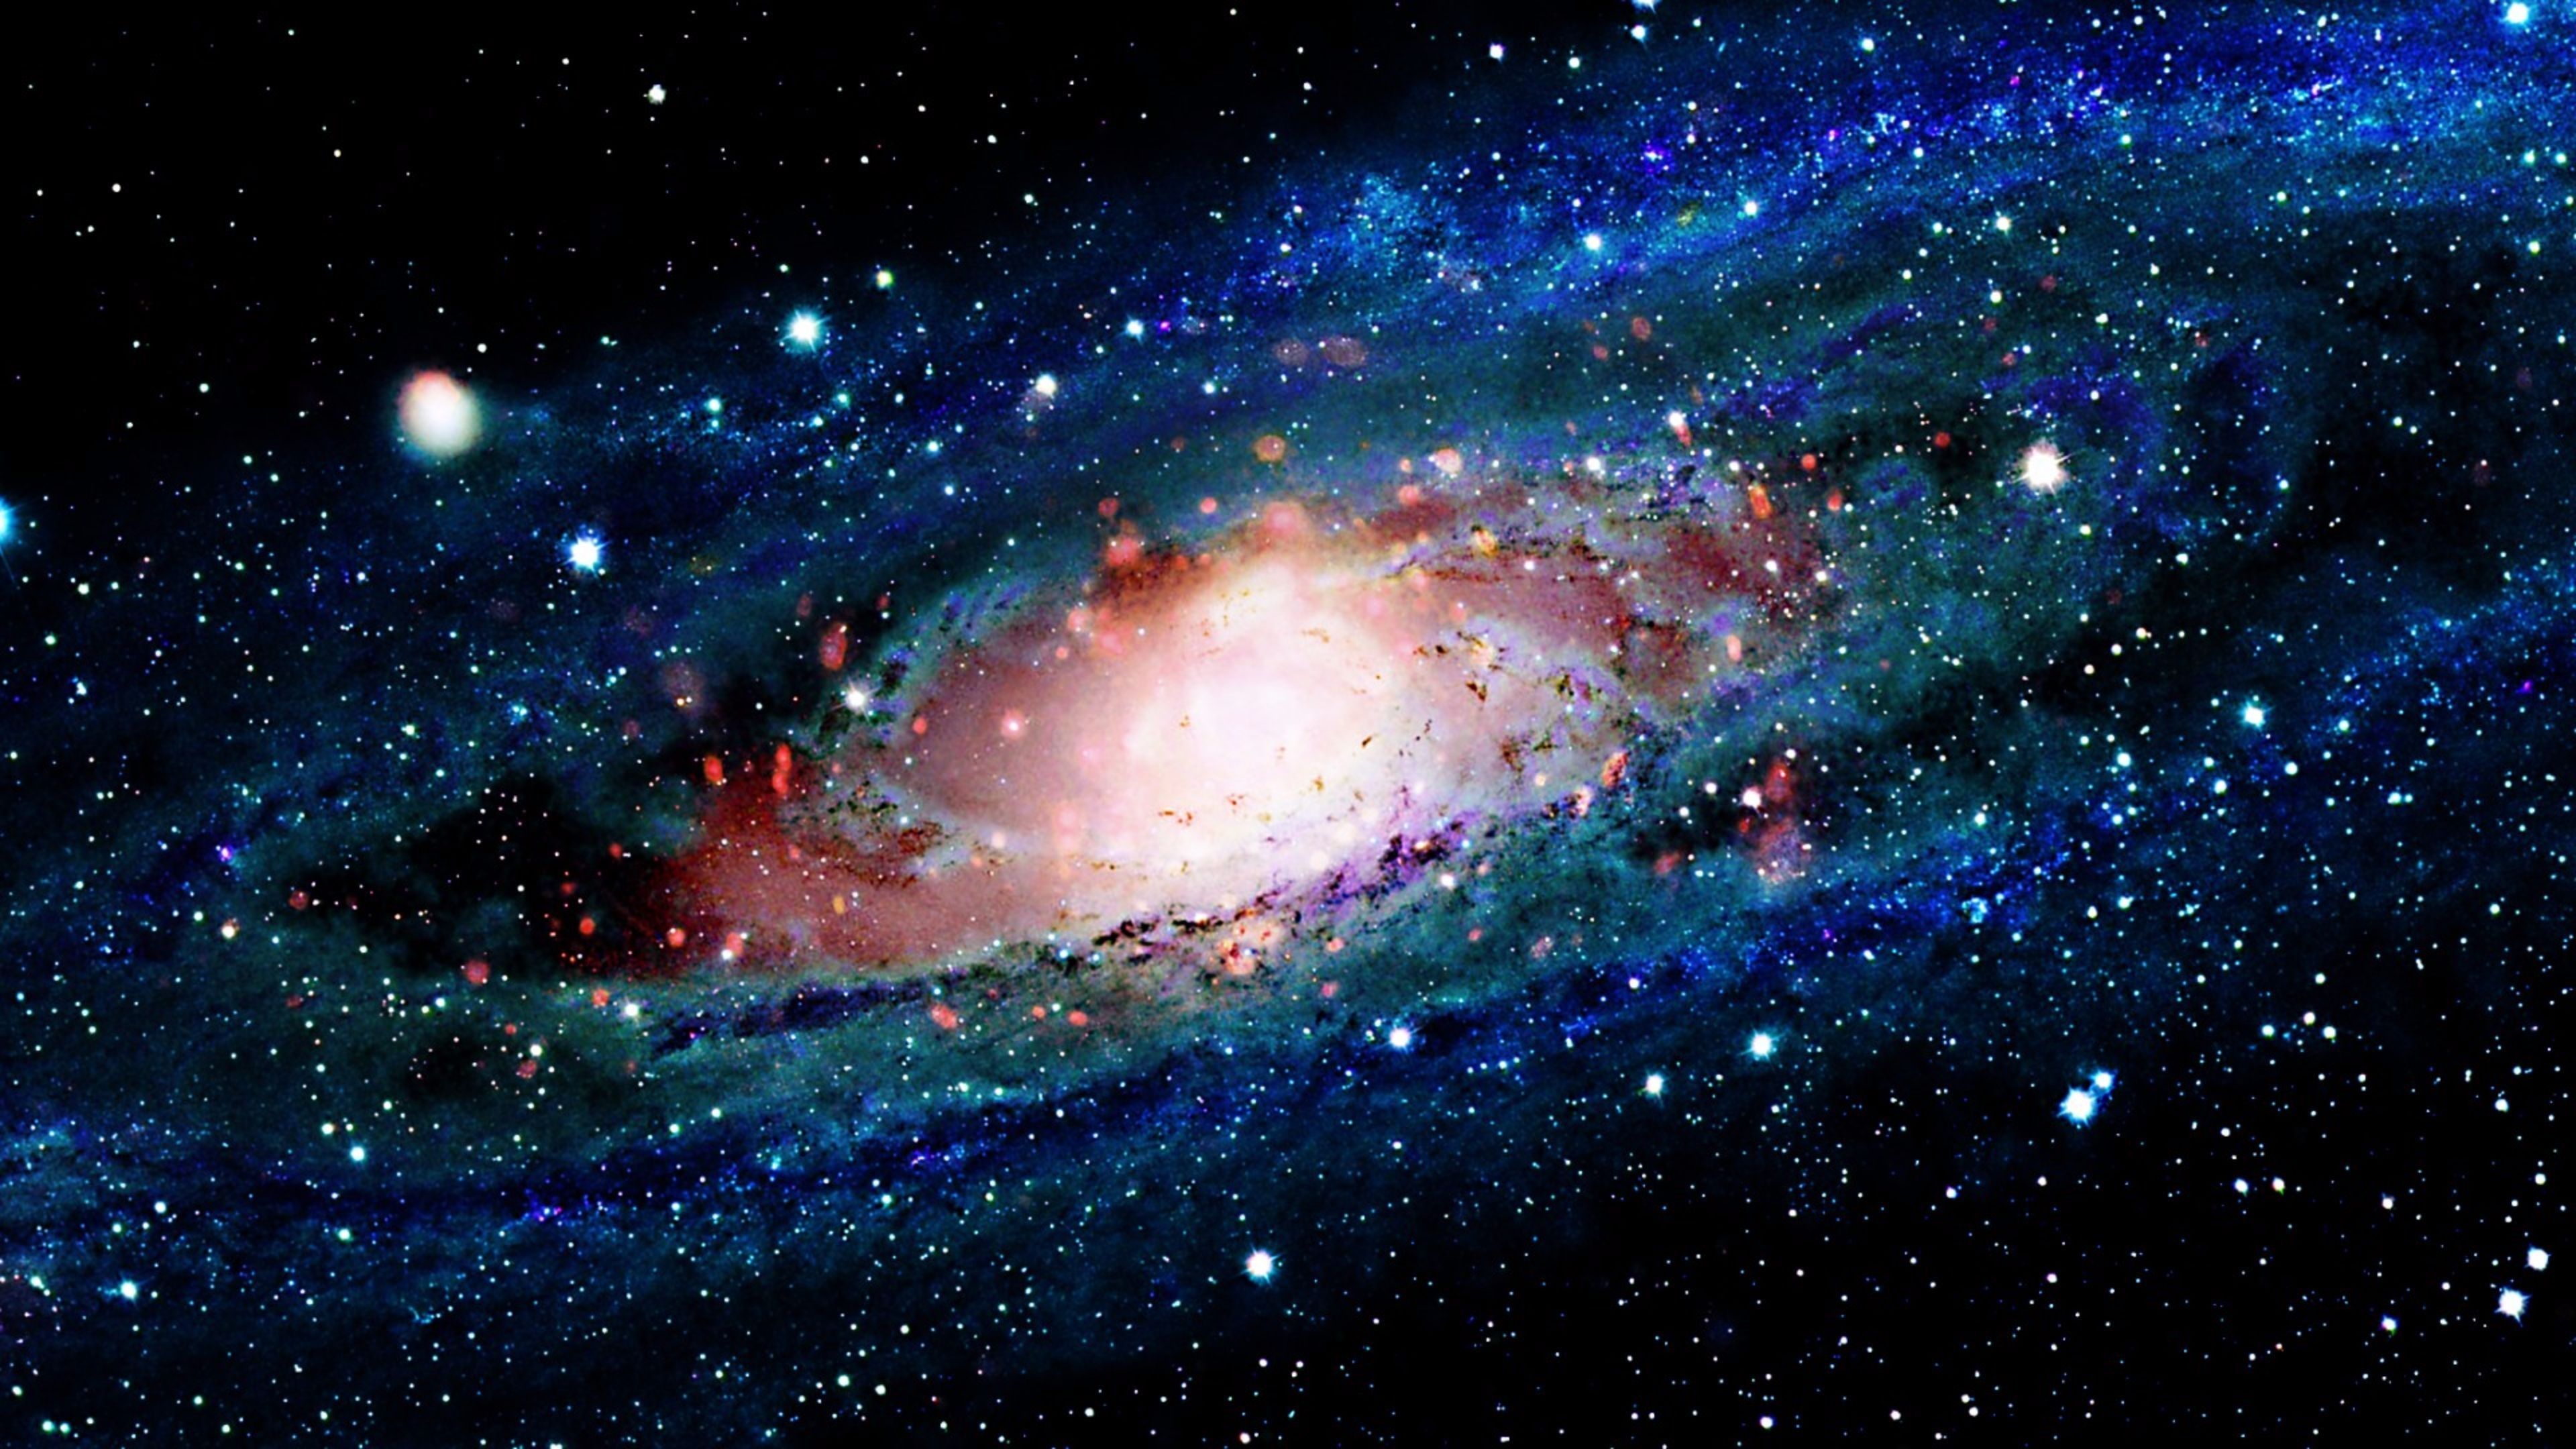 Đón chào thế giới không gian với những hình nền thiên hà đẹp như tranh. Từ vị trí của người quan sát, bạn sẽ được chiêm ngưỡng sự đa dạng và huyền bí của vũ trụ. Cùng trải nghiệm và cảm nhận cảm giác bao la nhất của vũ trụ.